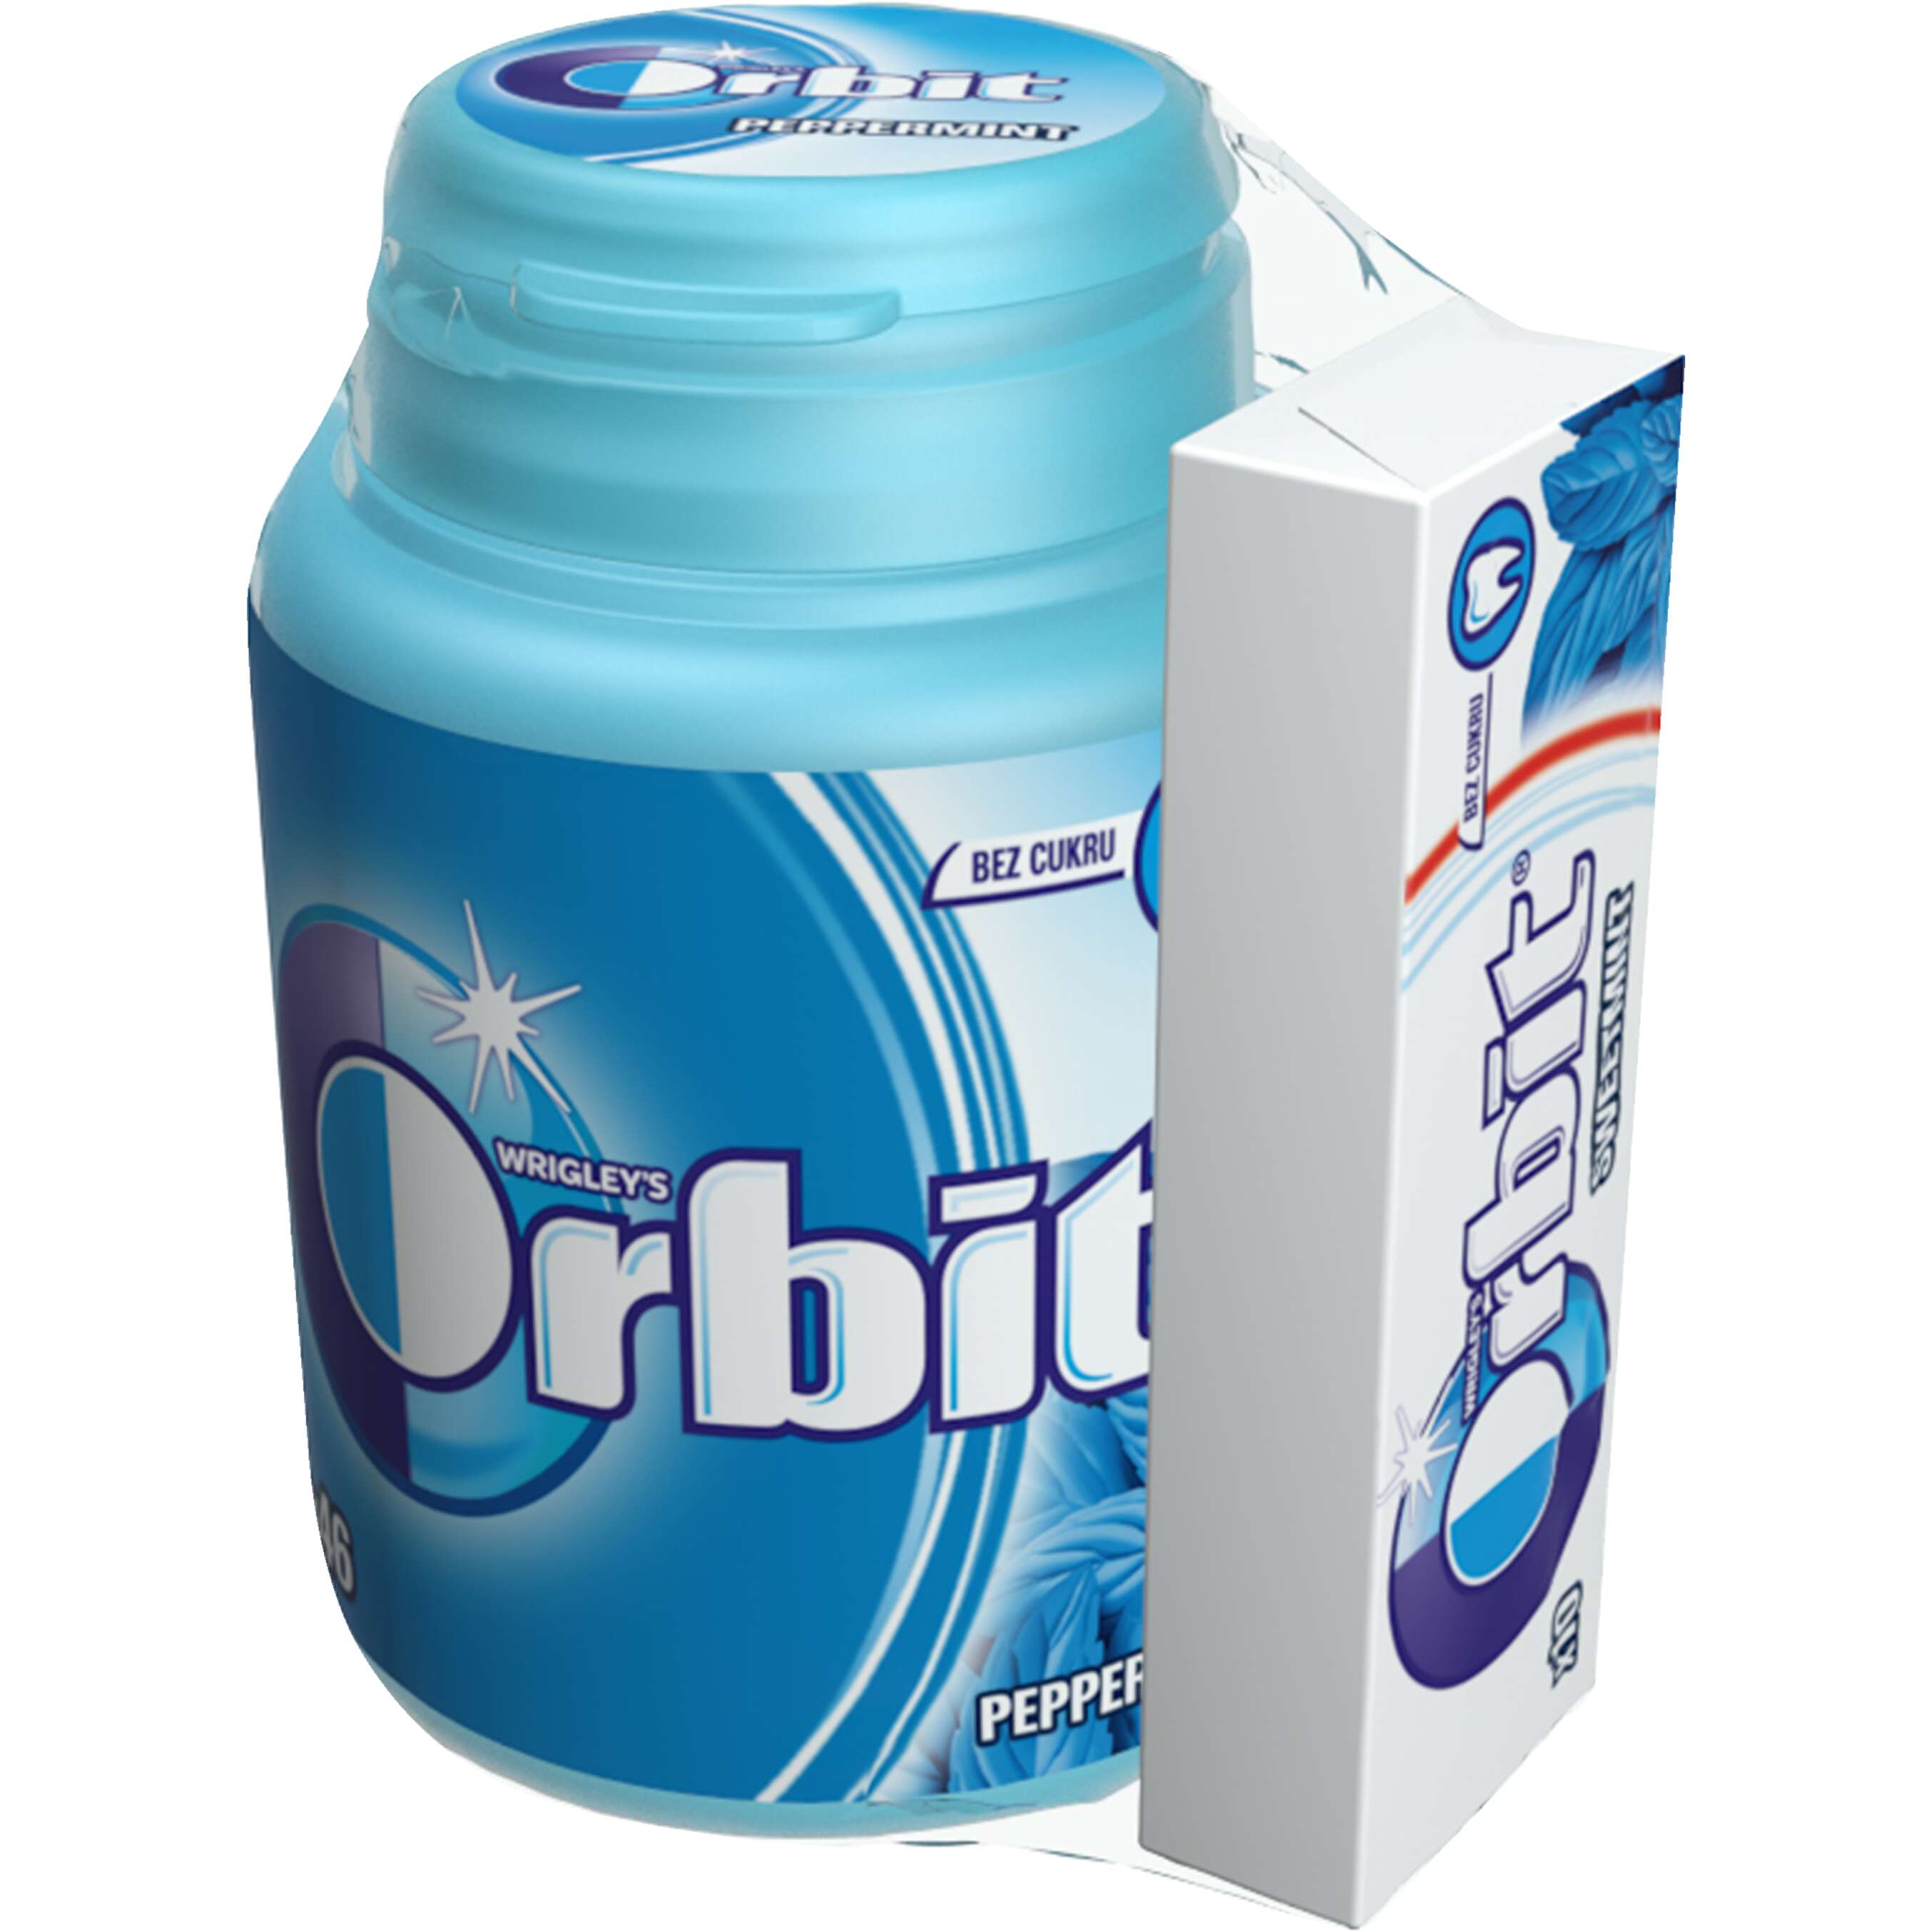 Zobrazit nabídku Orbit Žvýkačky